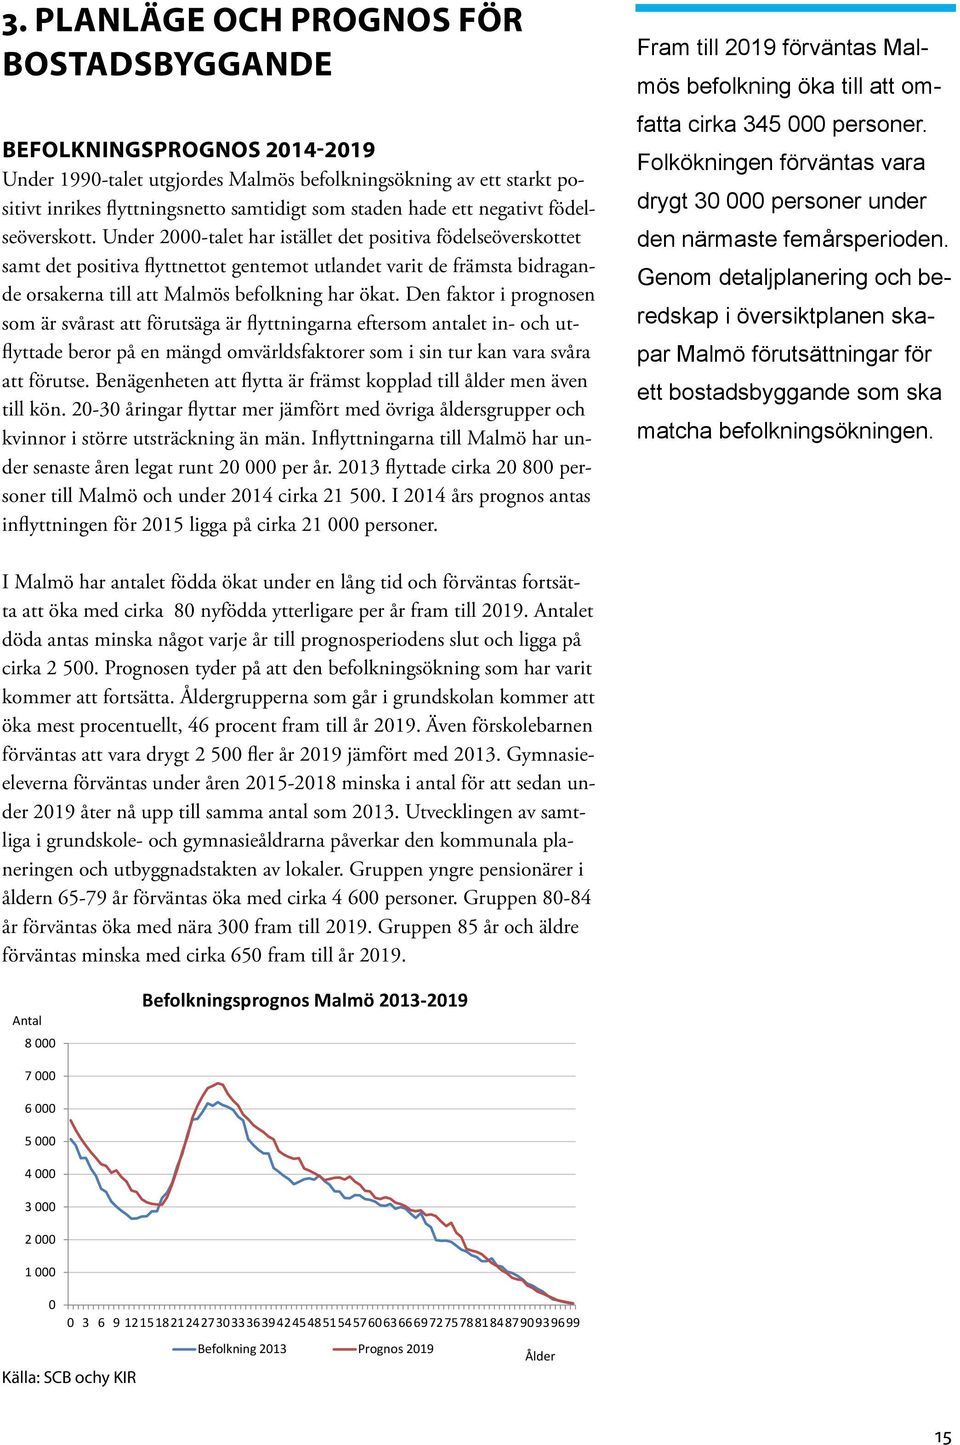 Under 2000-talet har istället det positiva födelseöverskottet samt det positiva flyttnettot gentemot utlandet varit de främsta bidragande orsakerna till att Malmös befolkning har ökat.